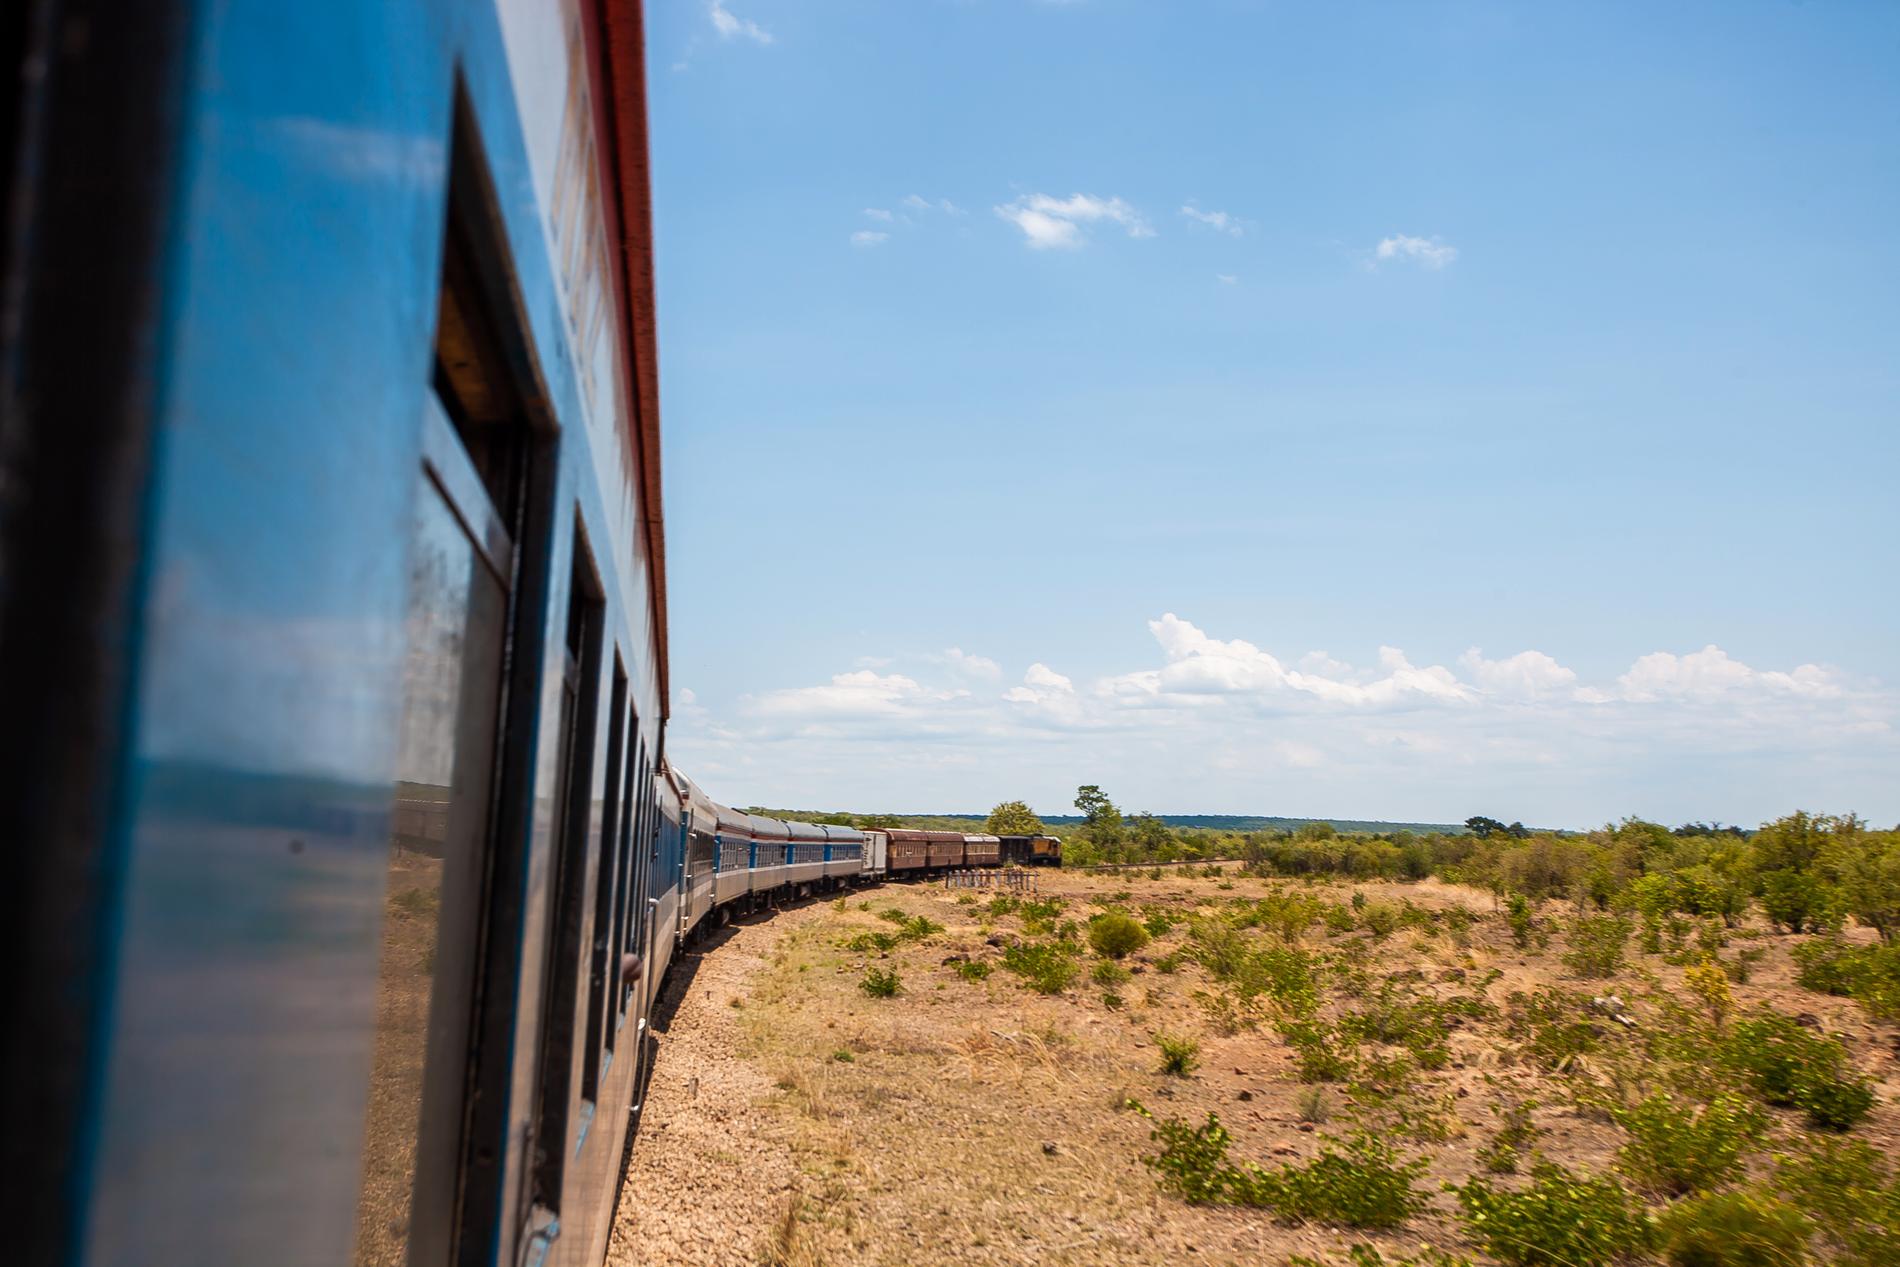 Från tåget kan resenärerna få syn på vilda djur. 